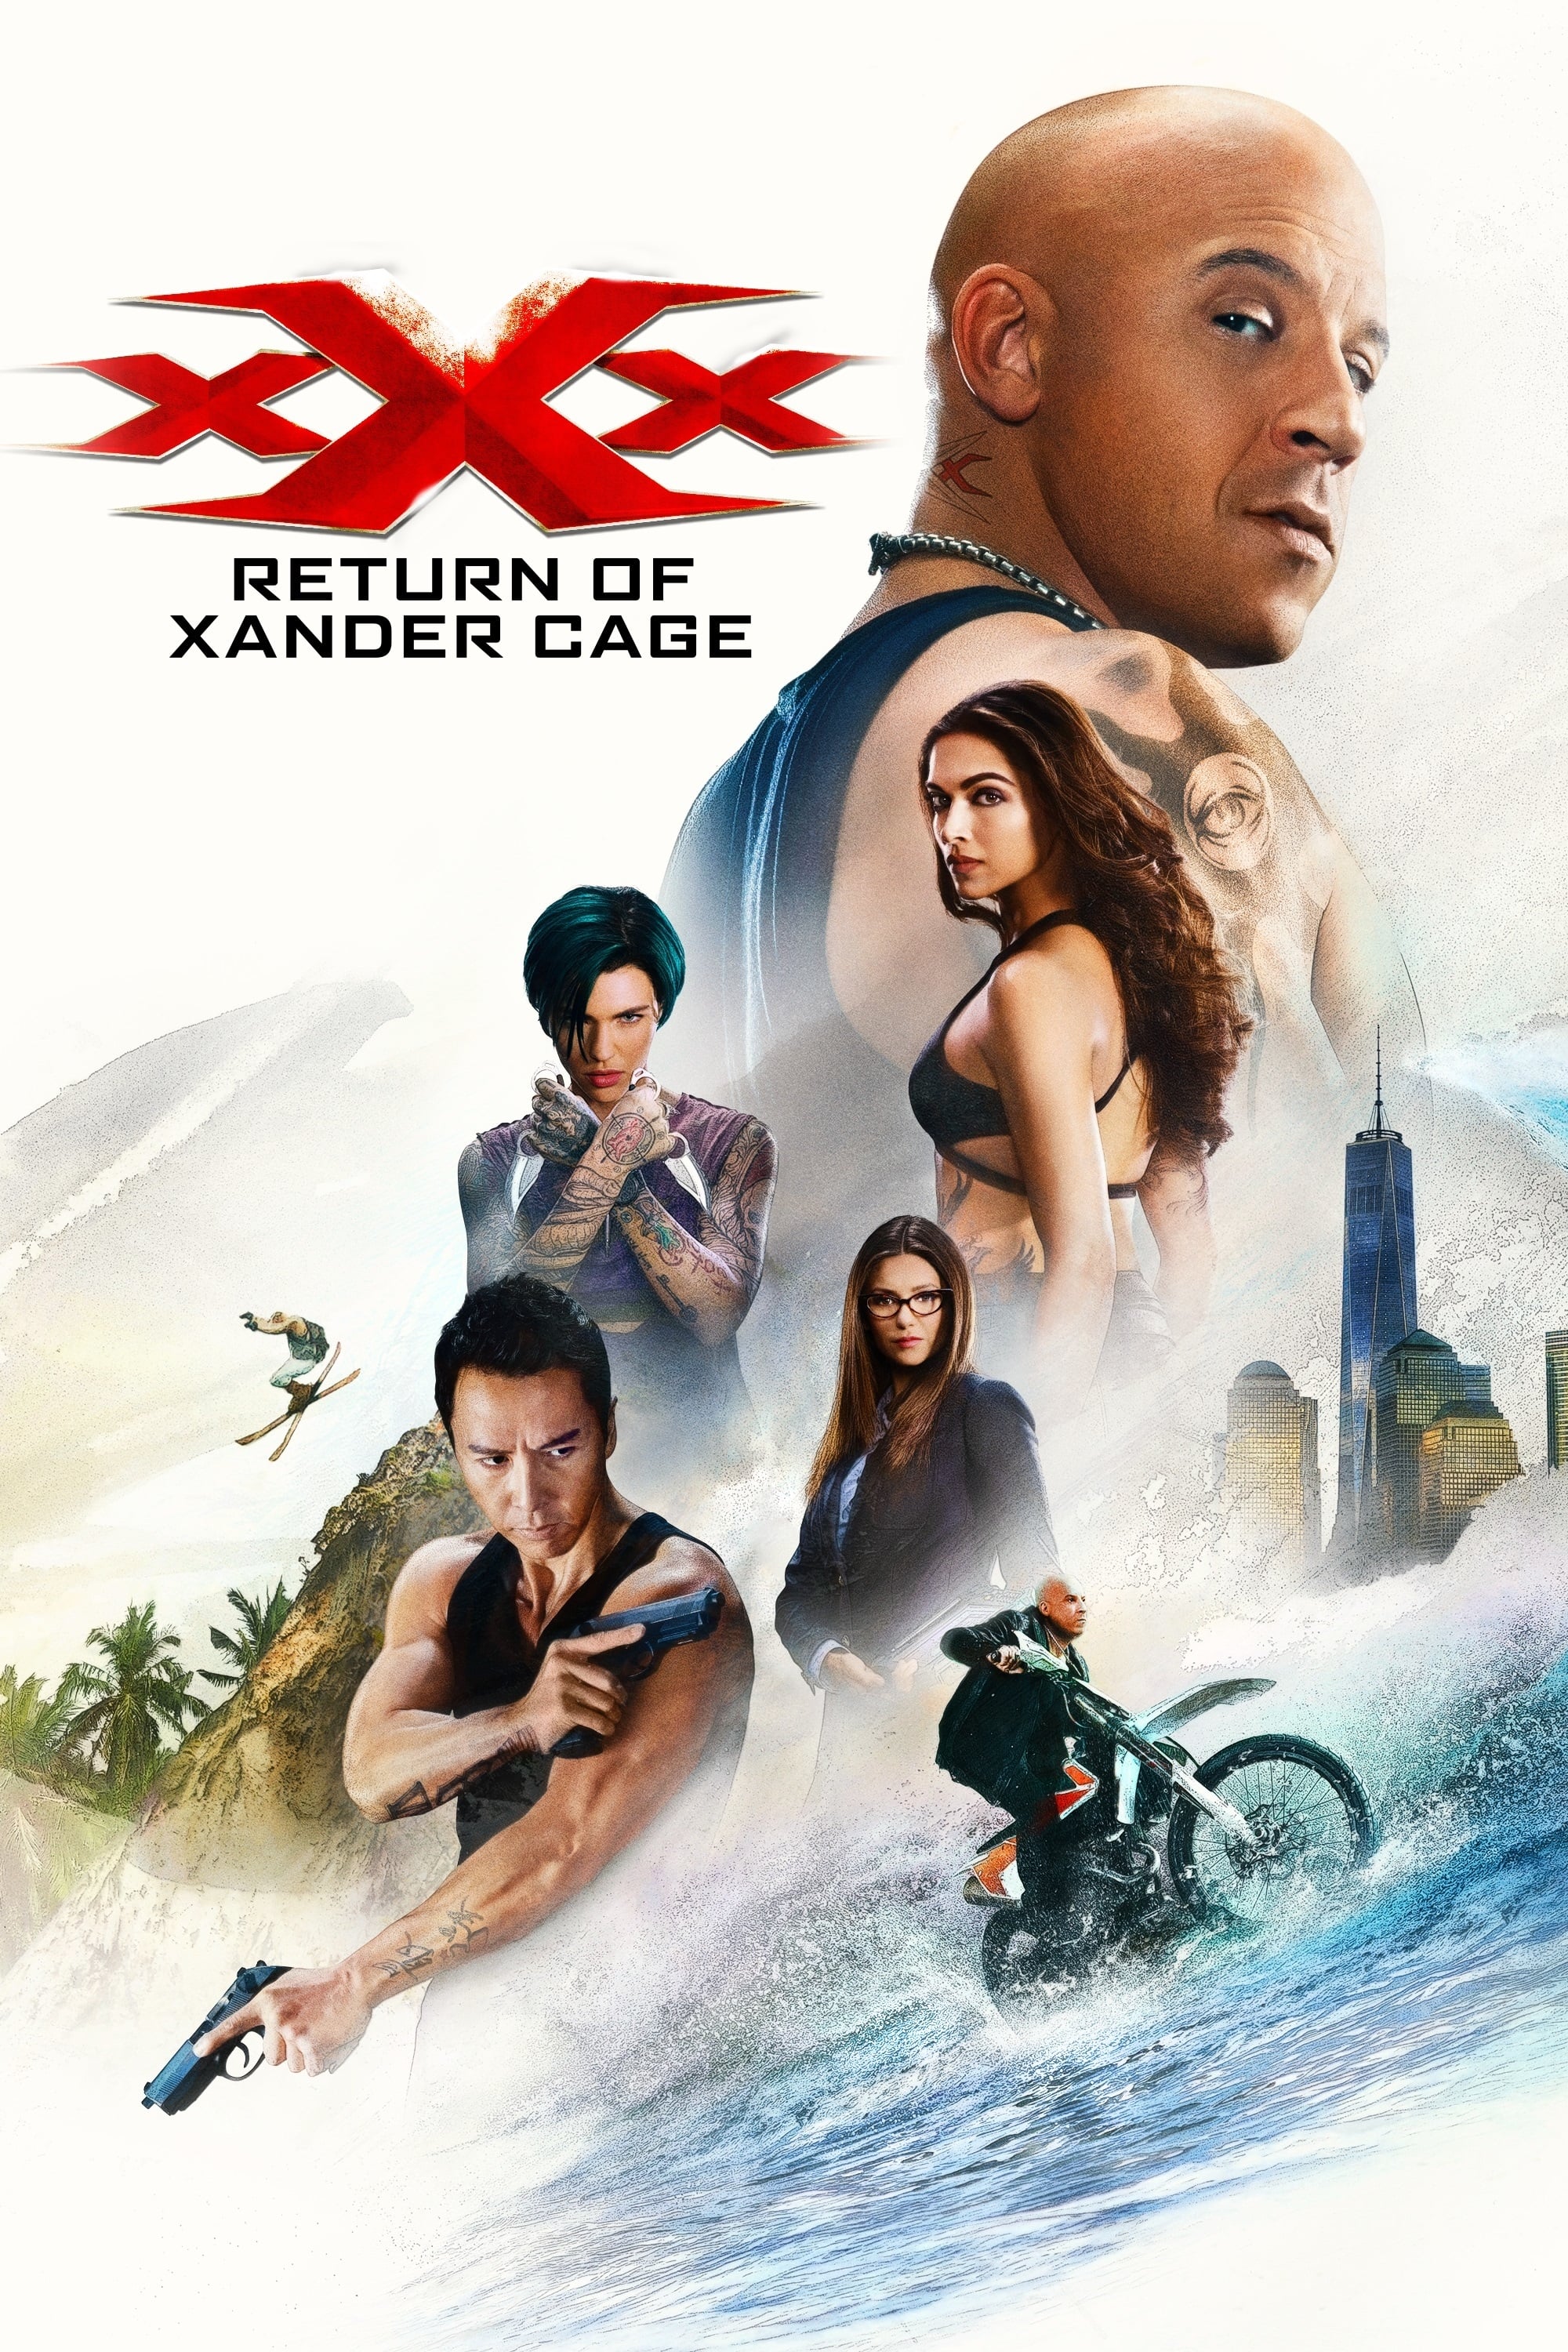 xXx - Die Rückkehr des Xander Cage